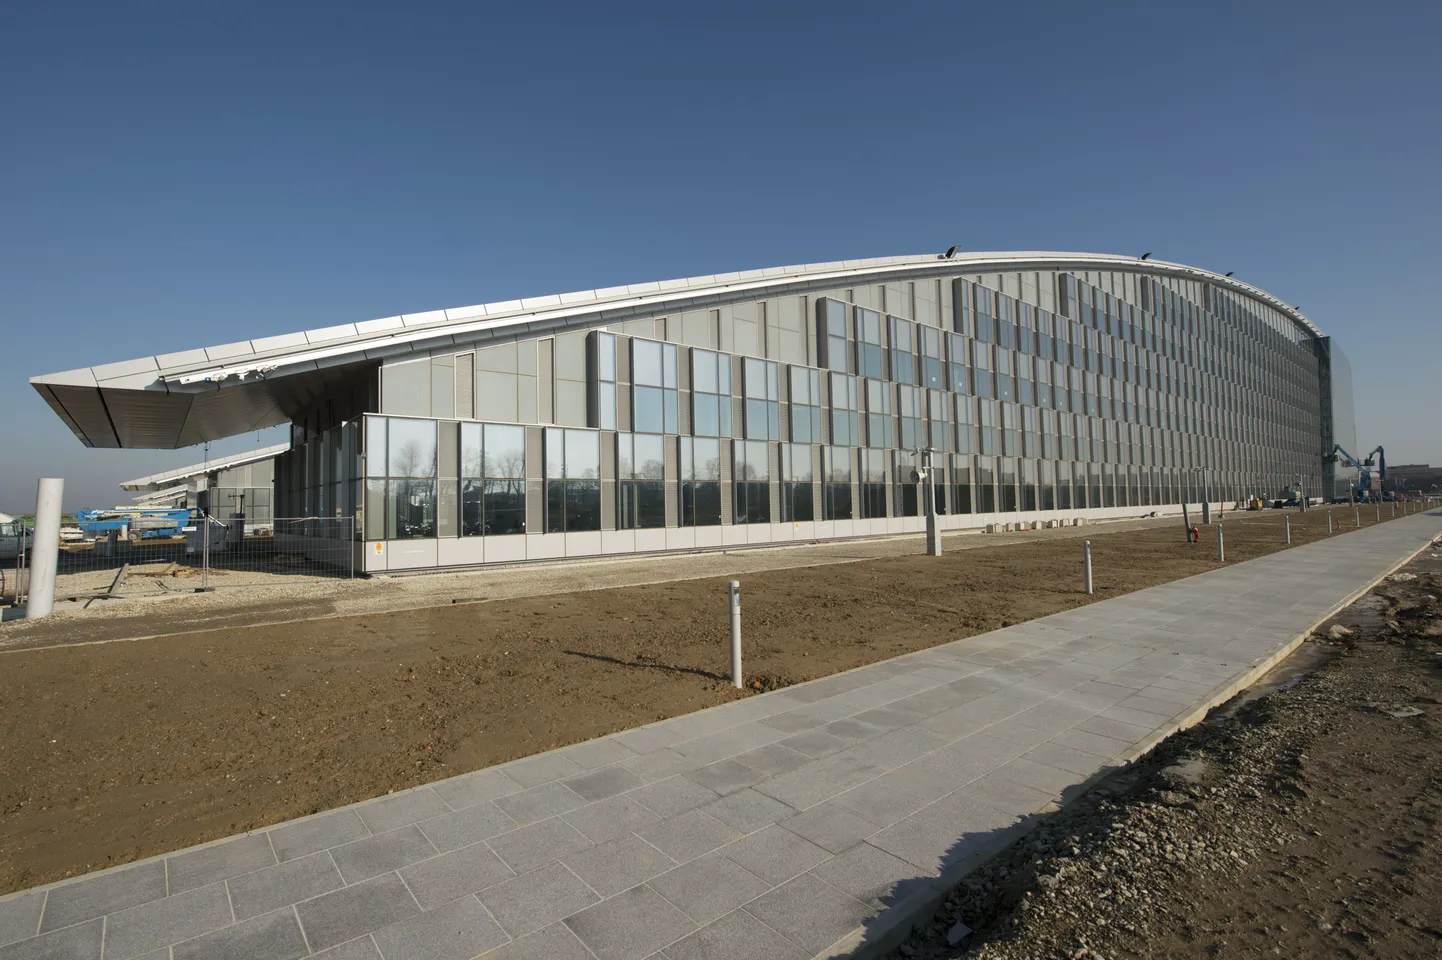 NATO uus peakorter asub üle tee nende senisest majast.